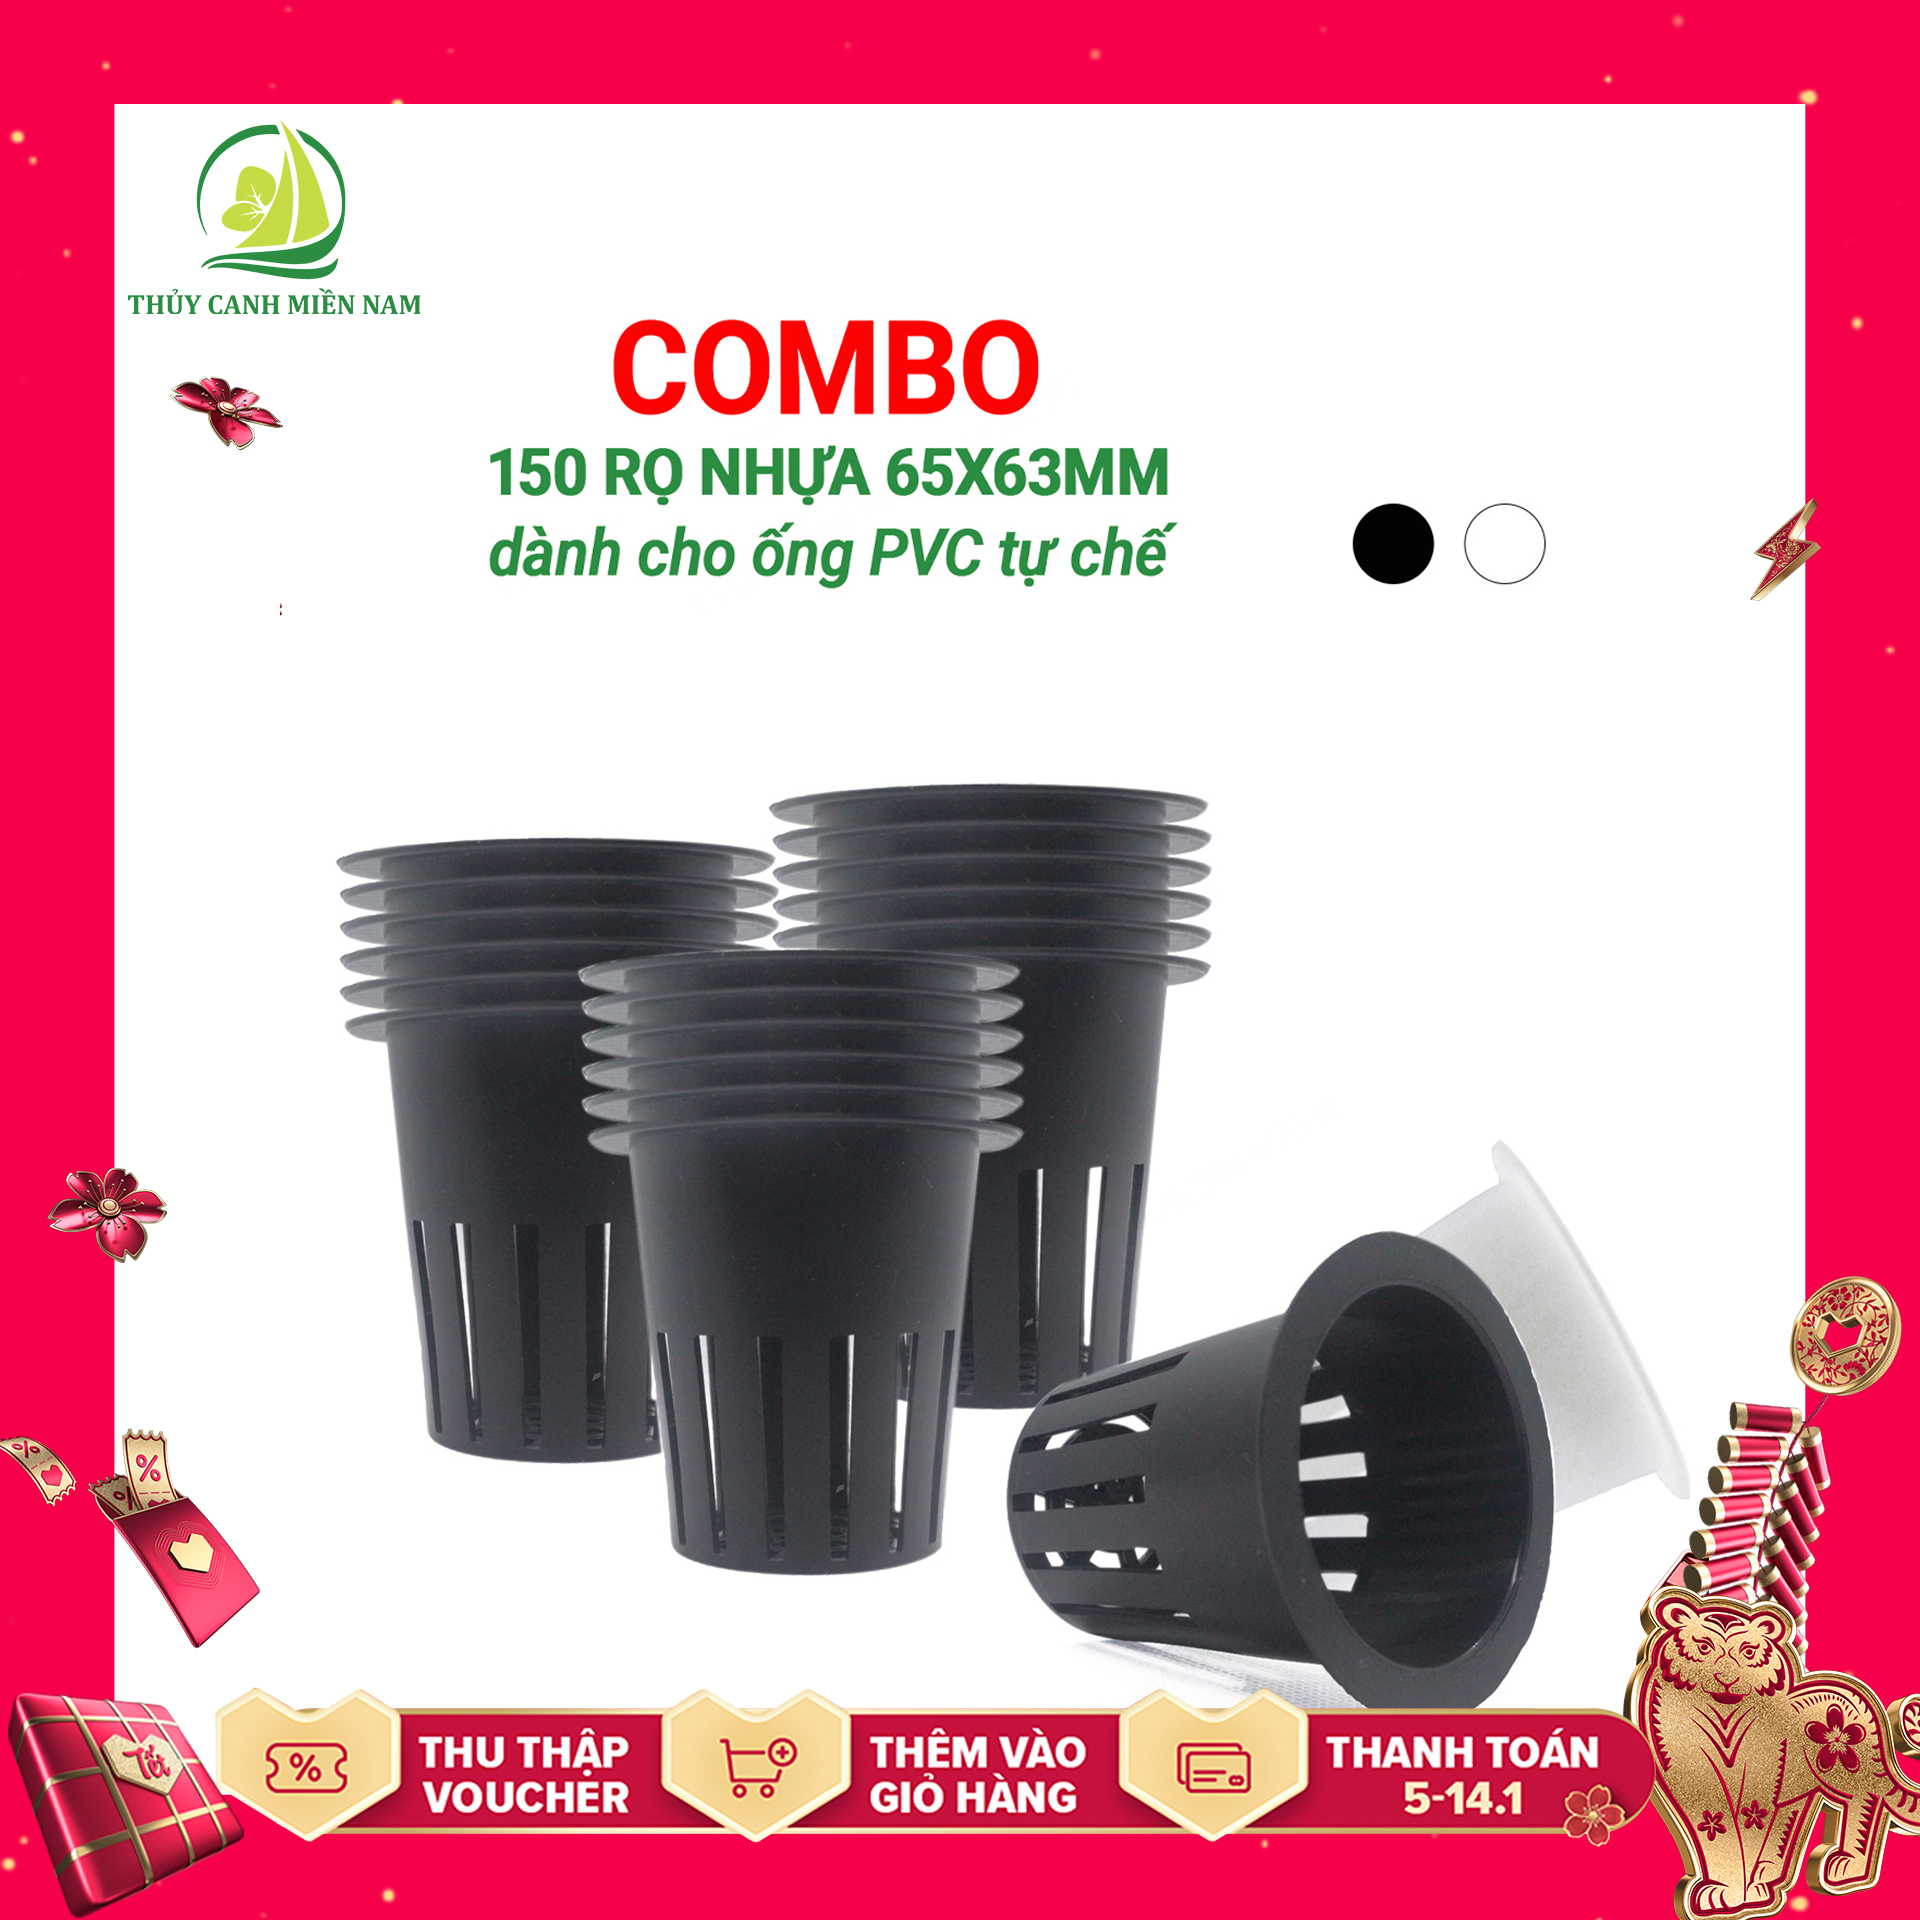 DÀNH CHO ỐNG PVC Bộ 150 Cái Rọ Nhựa Trồng Rau Thủy Canh Dành cho ống PVC